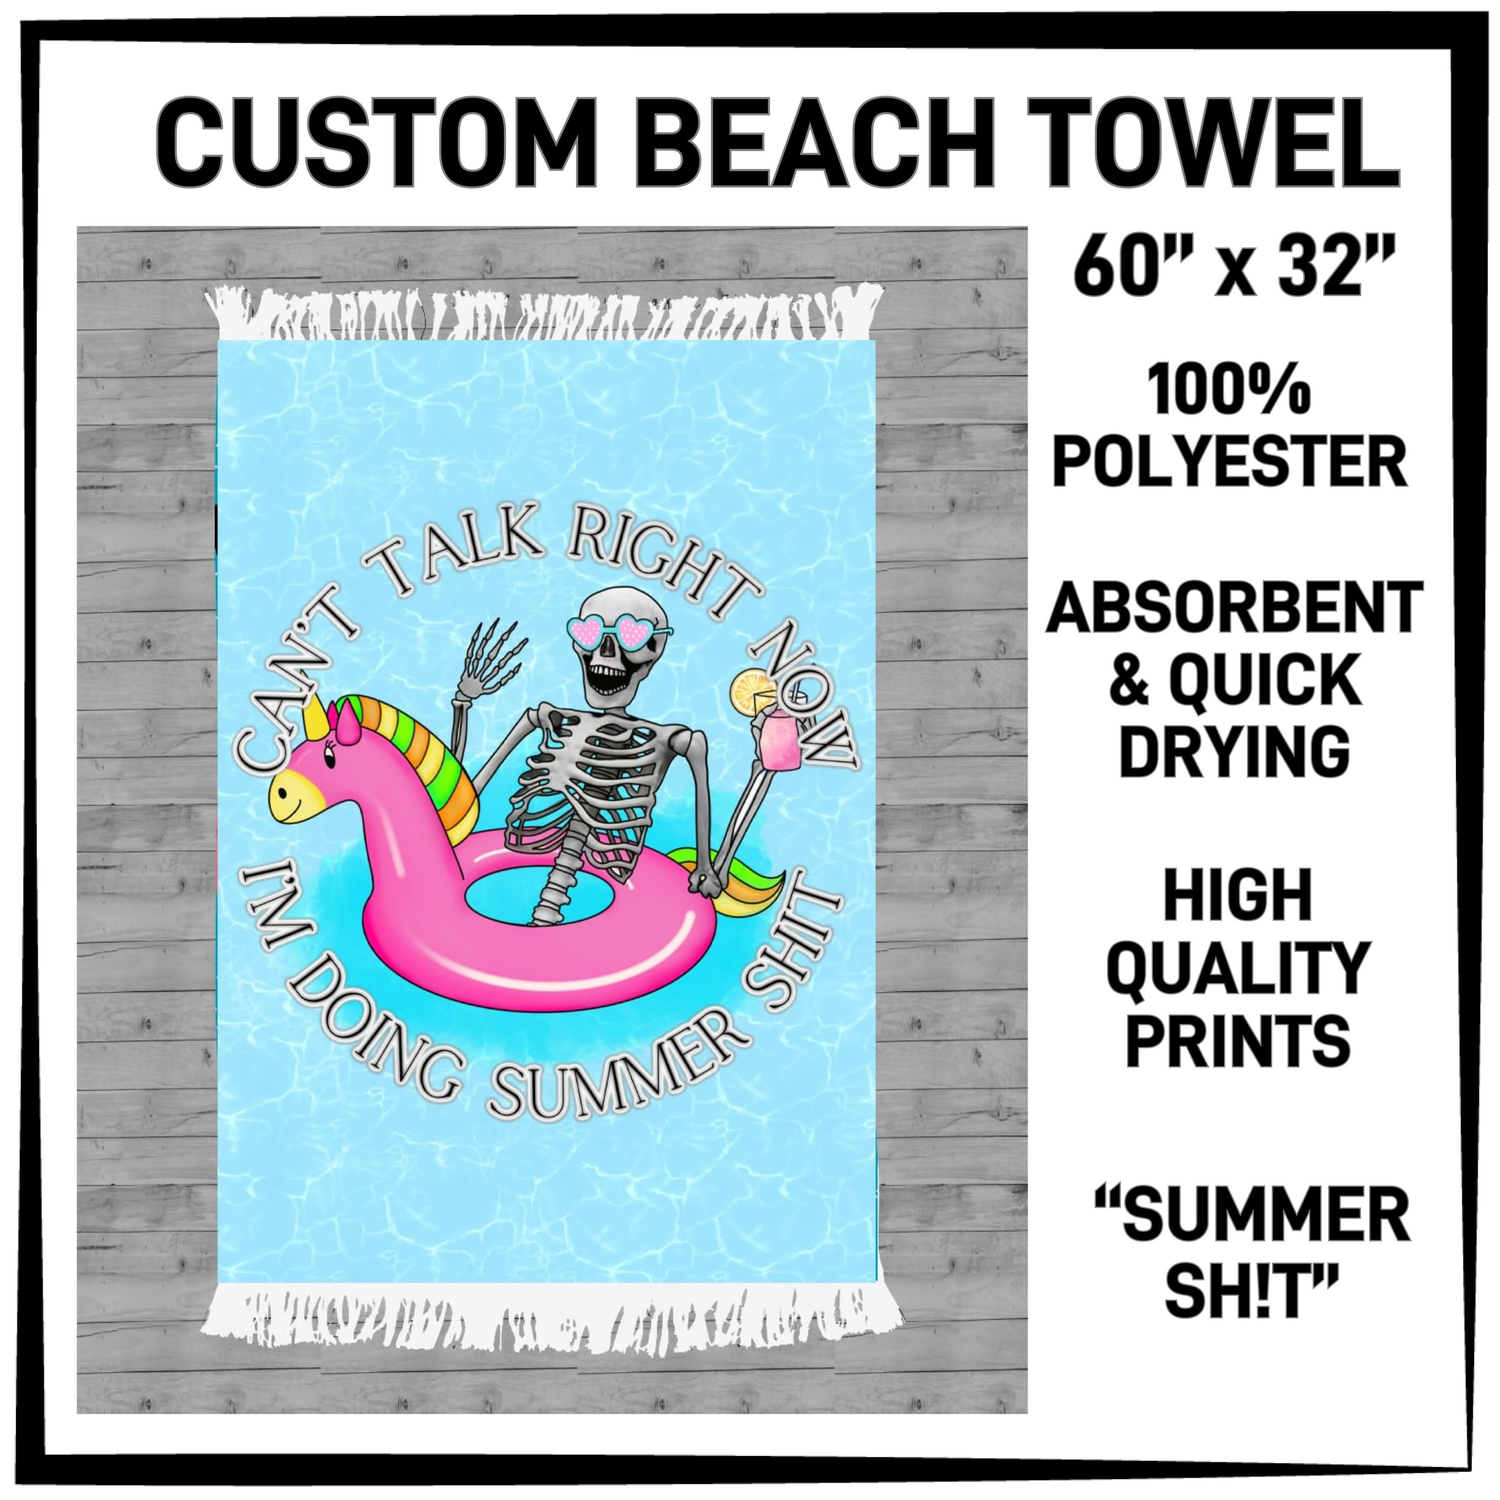 Huge Beach Towels